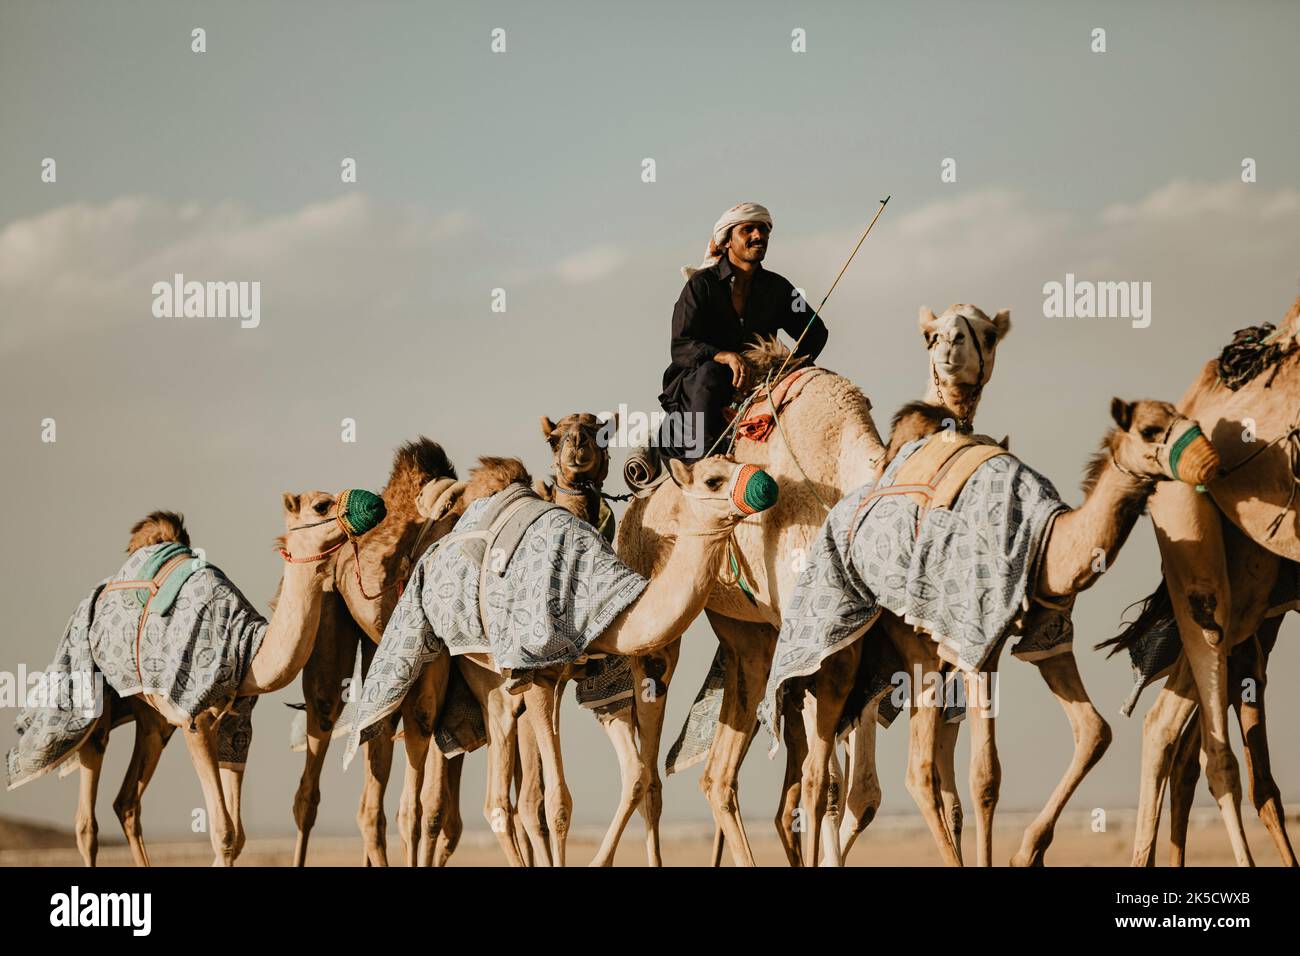 Arabie Saoudite, province de la Mecque, Djeddah/Djeddah, chauffeur de chameau Banque D'Images